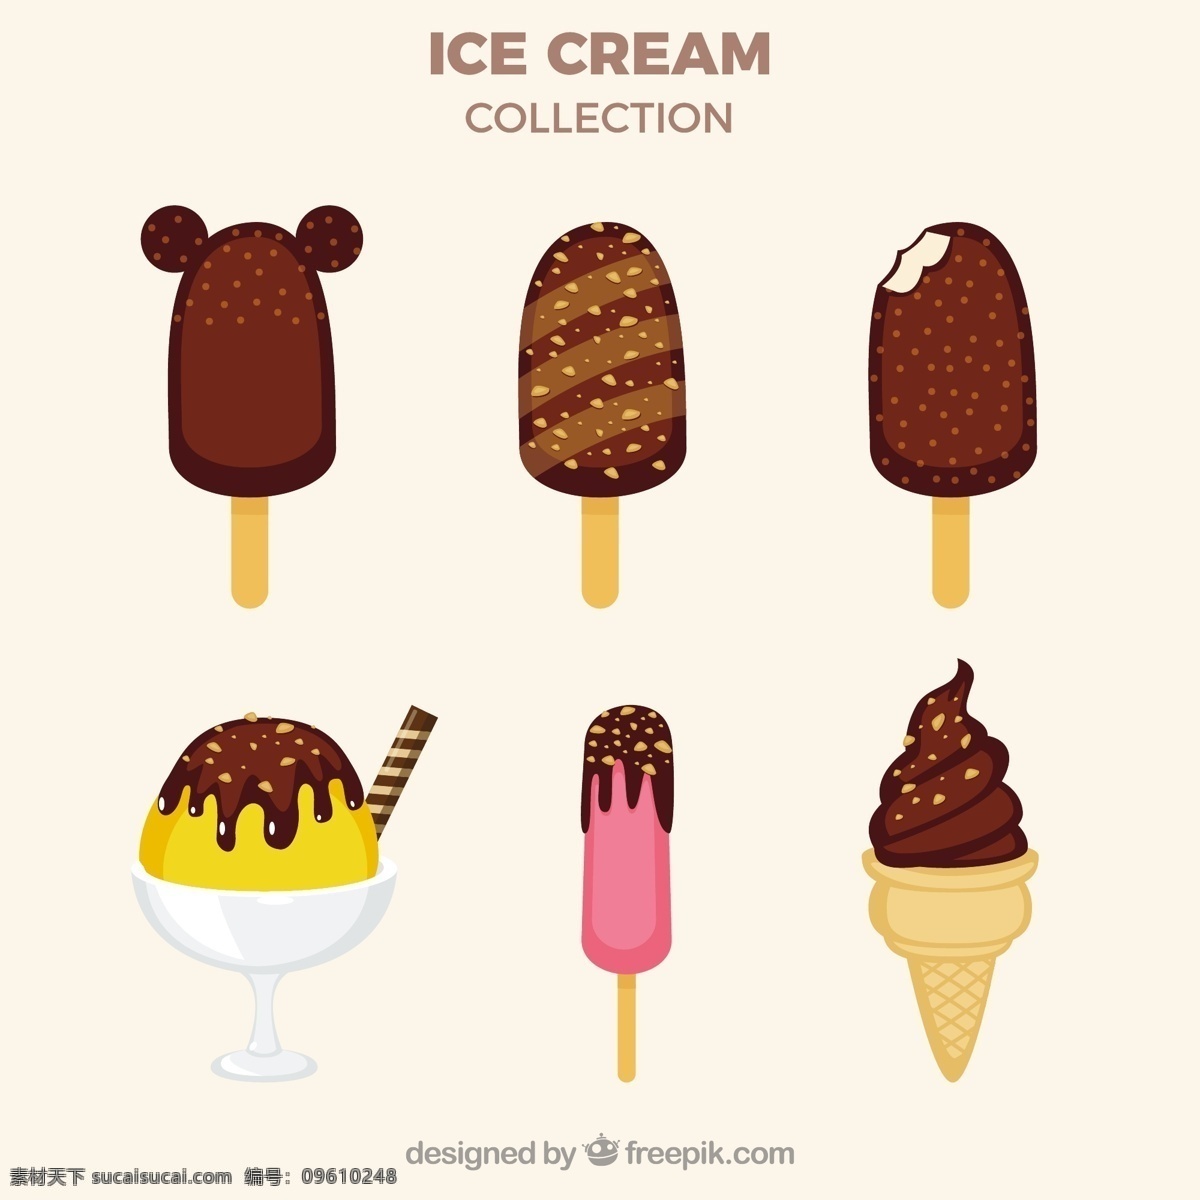 各种 巧克力 冰淇淋 雪糕 插图 矢量 巧克力冰淇淋 雪糕插图 矢量素材 甜品图标 冷饮插图 清凉甜品 冰淇淋标志 卡通图标 雪糕图标 网页图标 冰激凌图标 冰激凌插图